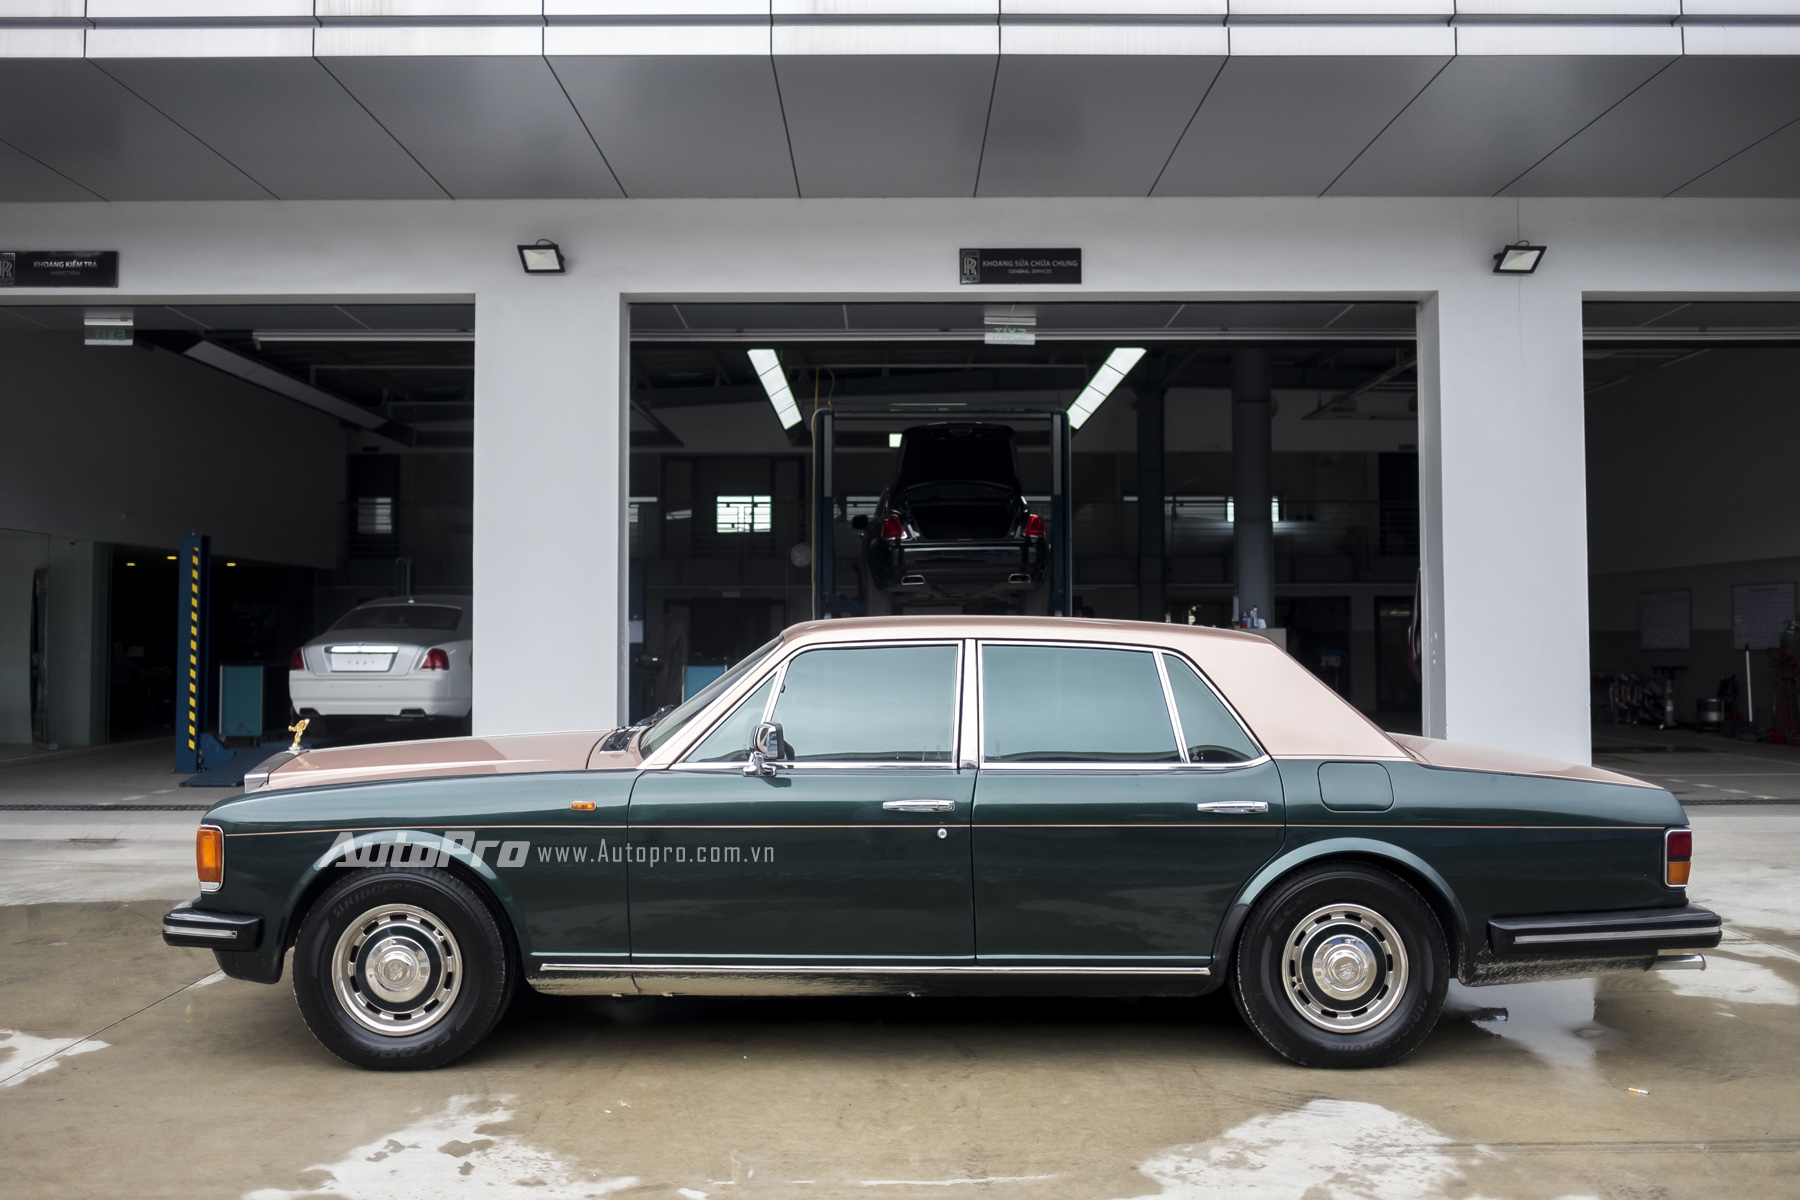 
Chiếc xe Rolls-Royce Silver Spirit 1982 này có kích thước DxRxC tương ứng là 5.278 x 1.887x 1.4986mm cùng trục cơ sở dài 3.061mm. Nếu so với những mẫu xe hạng sang hiện nay như BMW Series-7 hay Mercedes-Benz S-class thì mẫu xe cổ của Rolls-Royce vẫn dài và rộng hơn.
